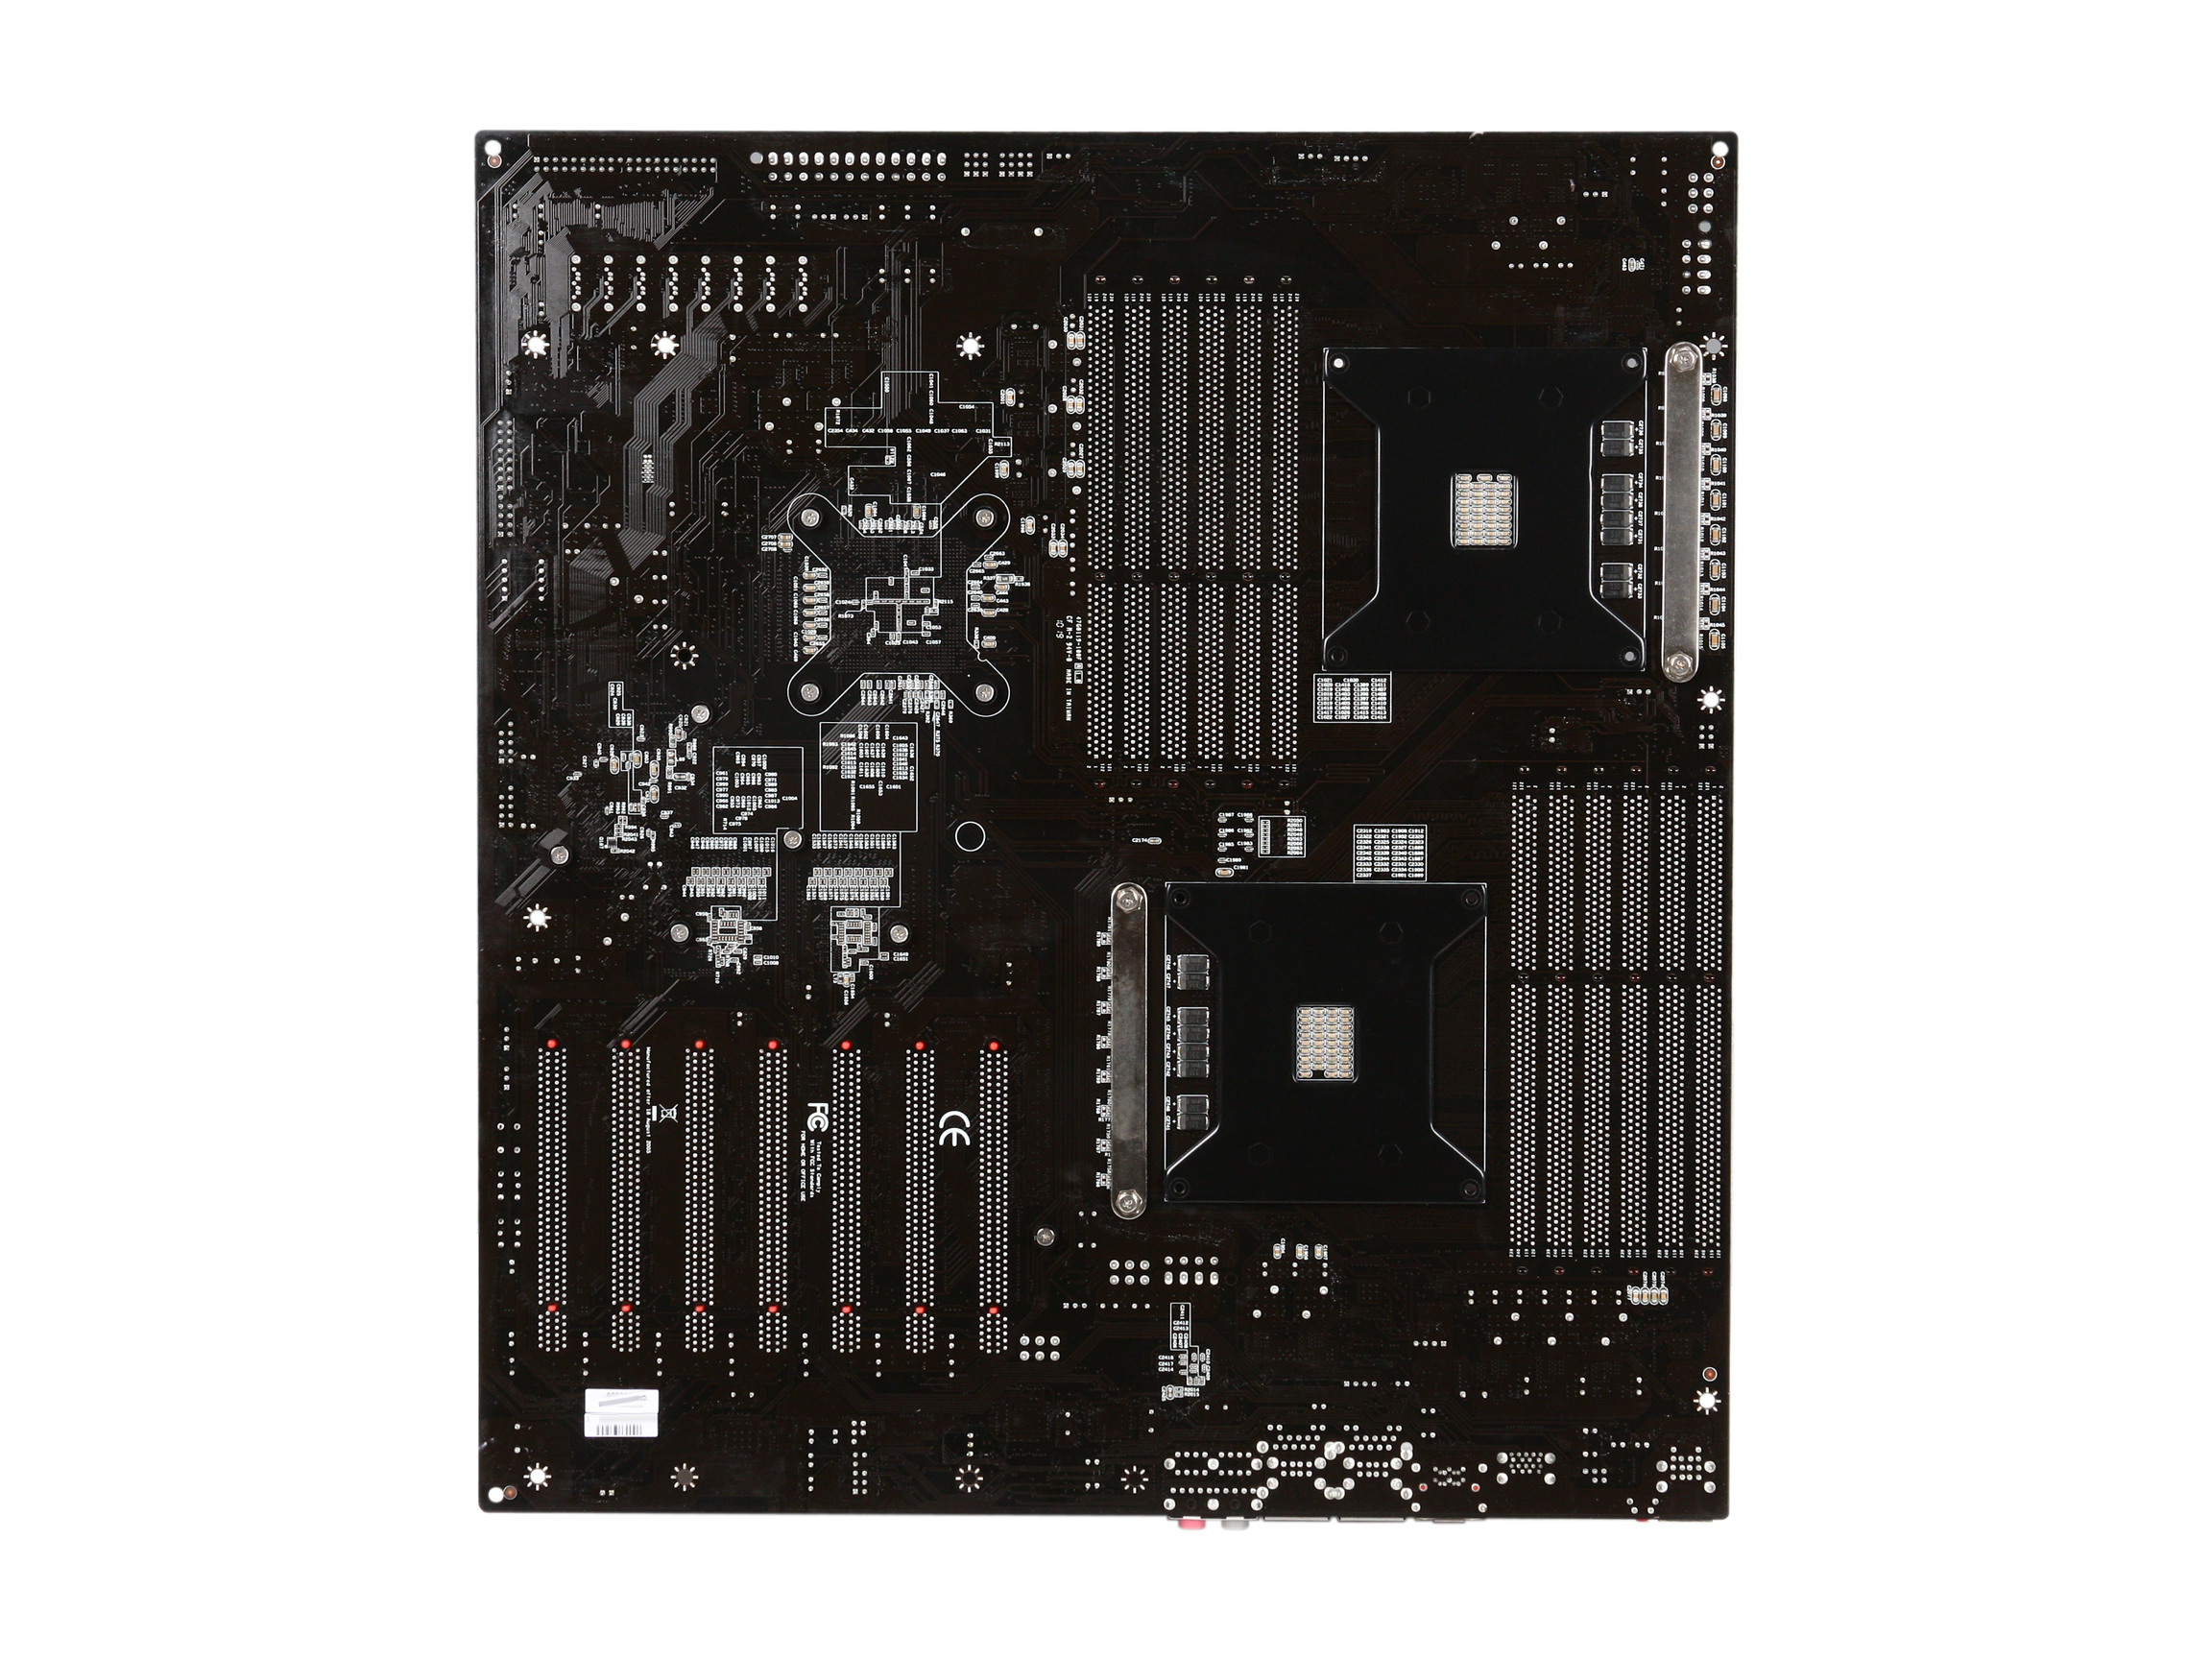 EVGA Classified SR 2 (Super Record 2) 270 WS W555 A1 LGA 1366 Intel 5520 SATA 6Gb/s USB 3.0 HPTX Intel Motherboard